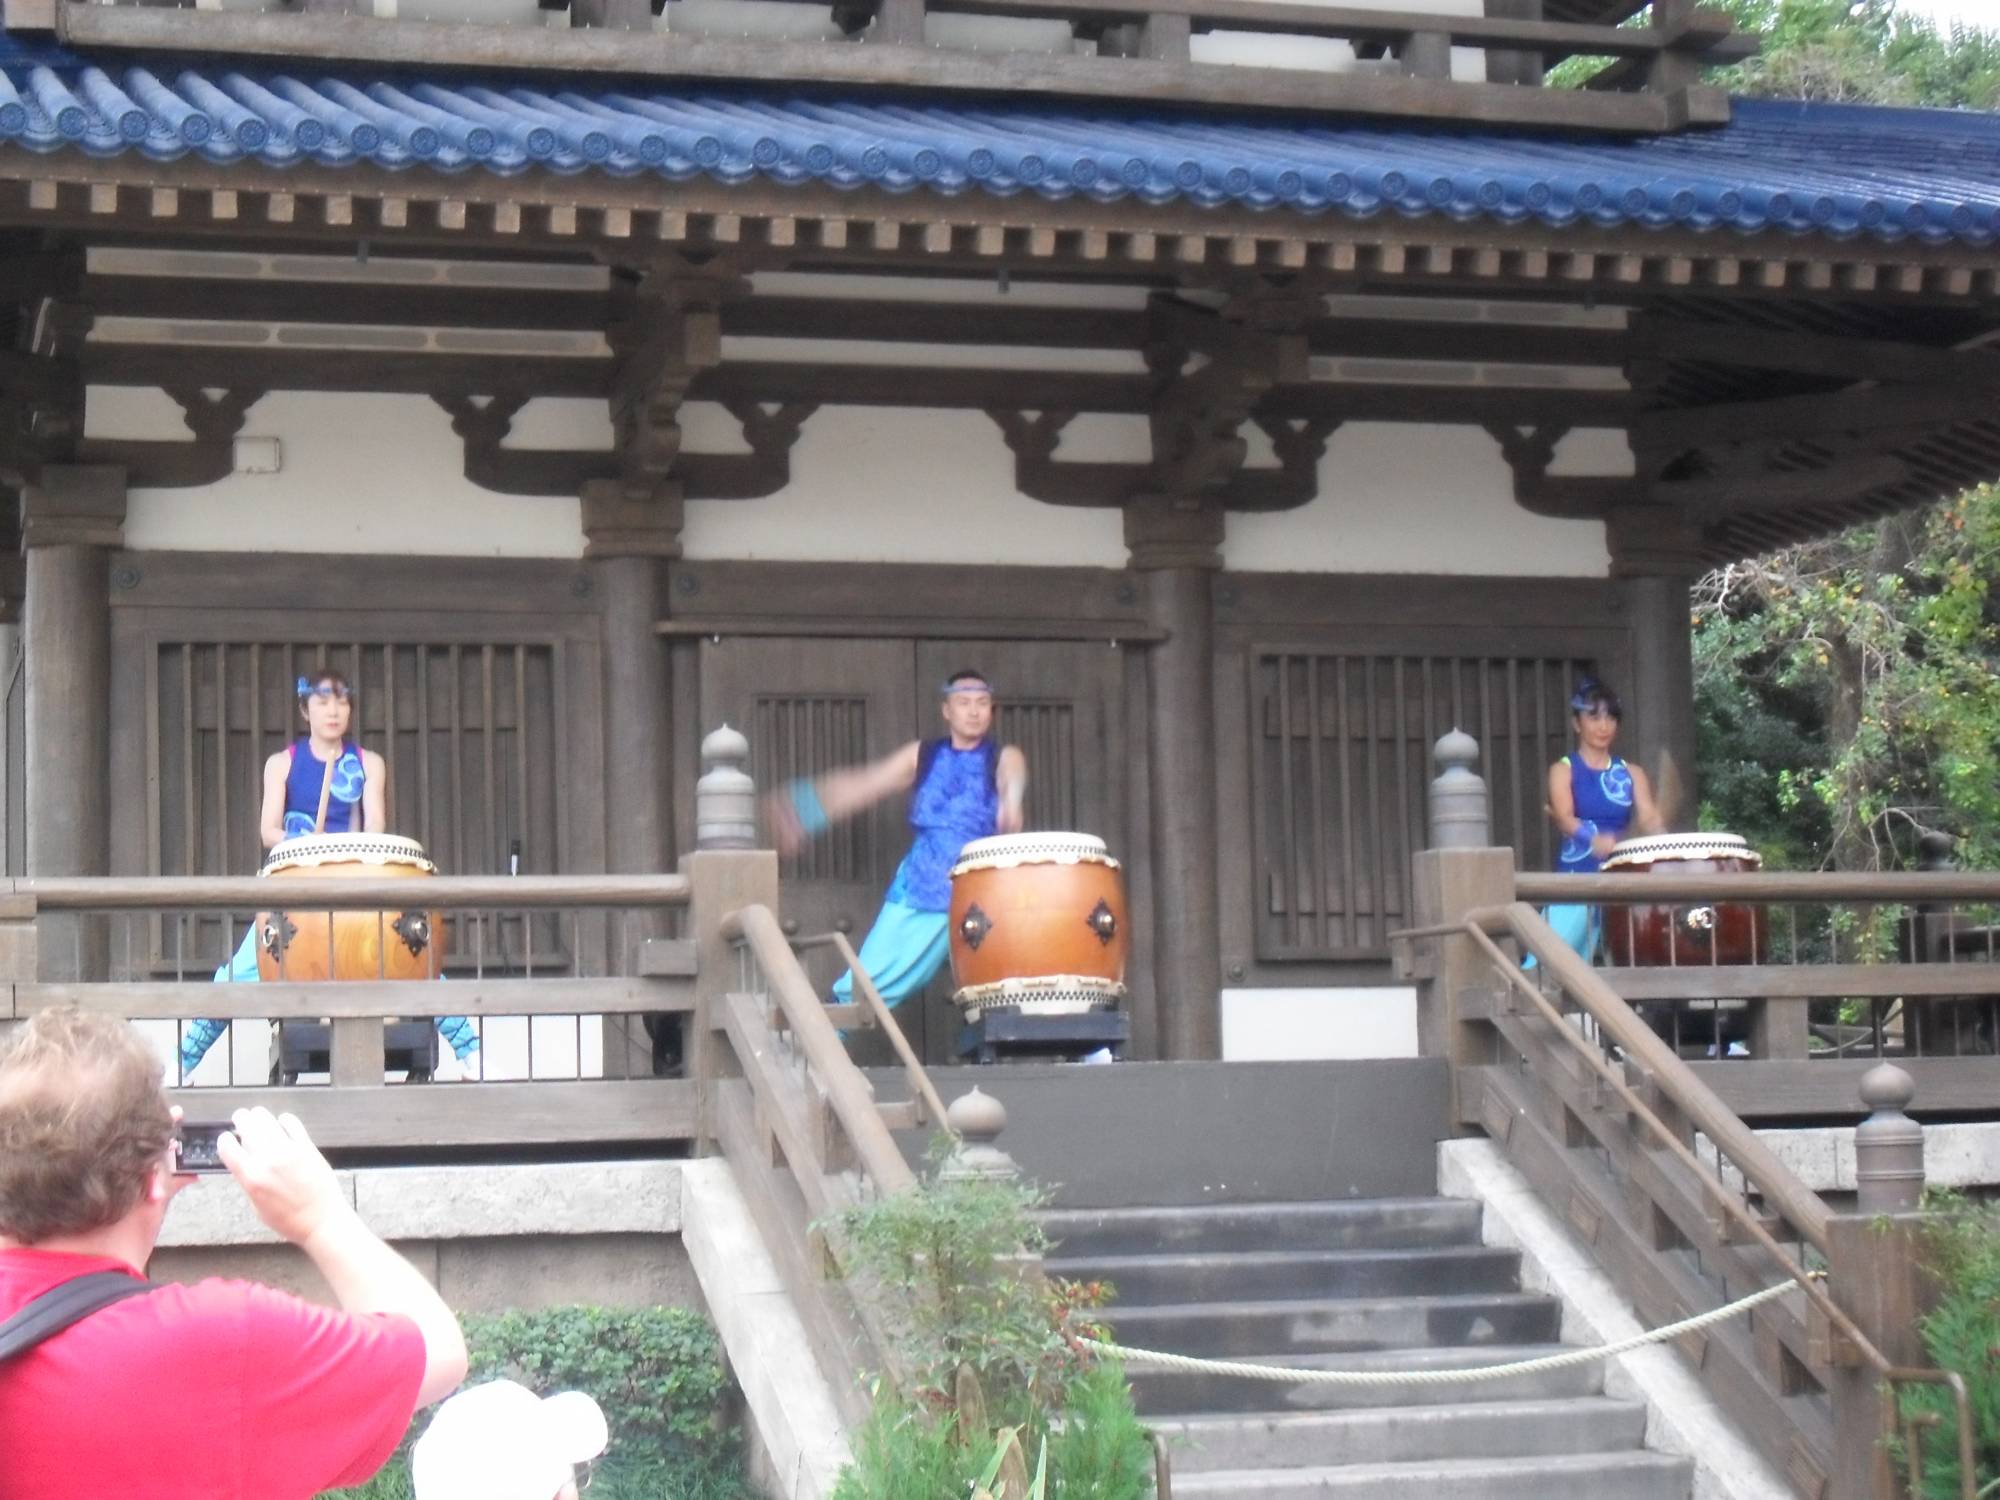 Drummers in Japan